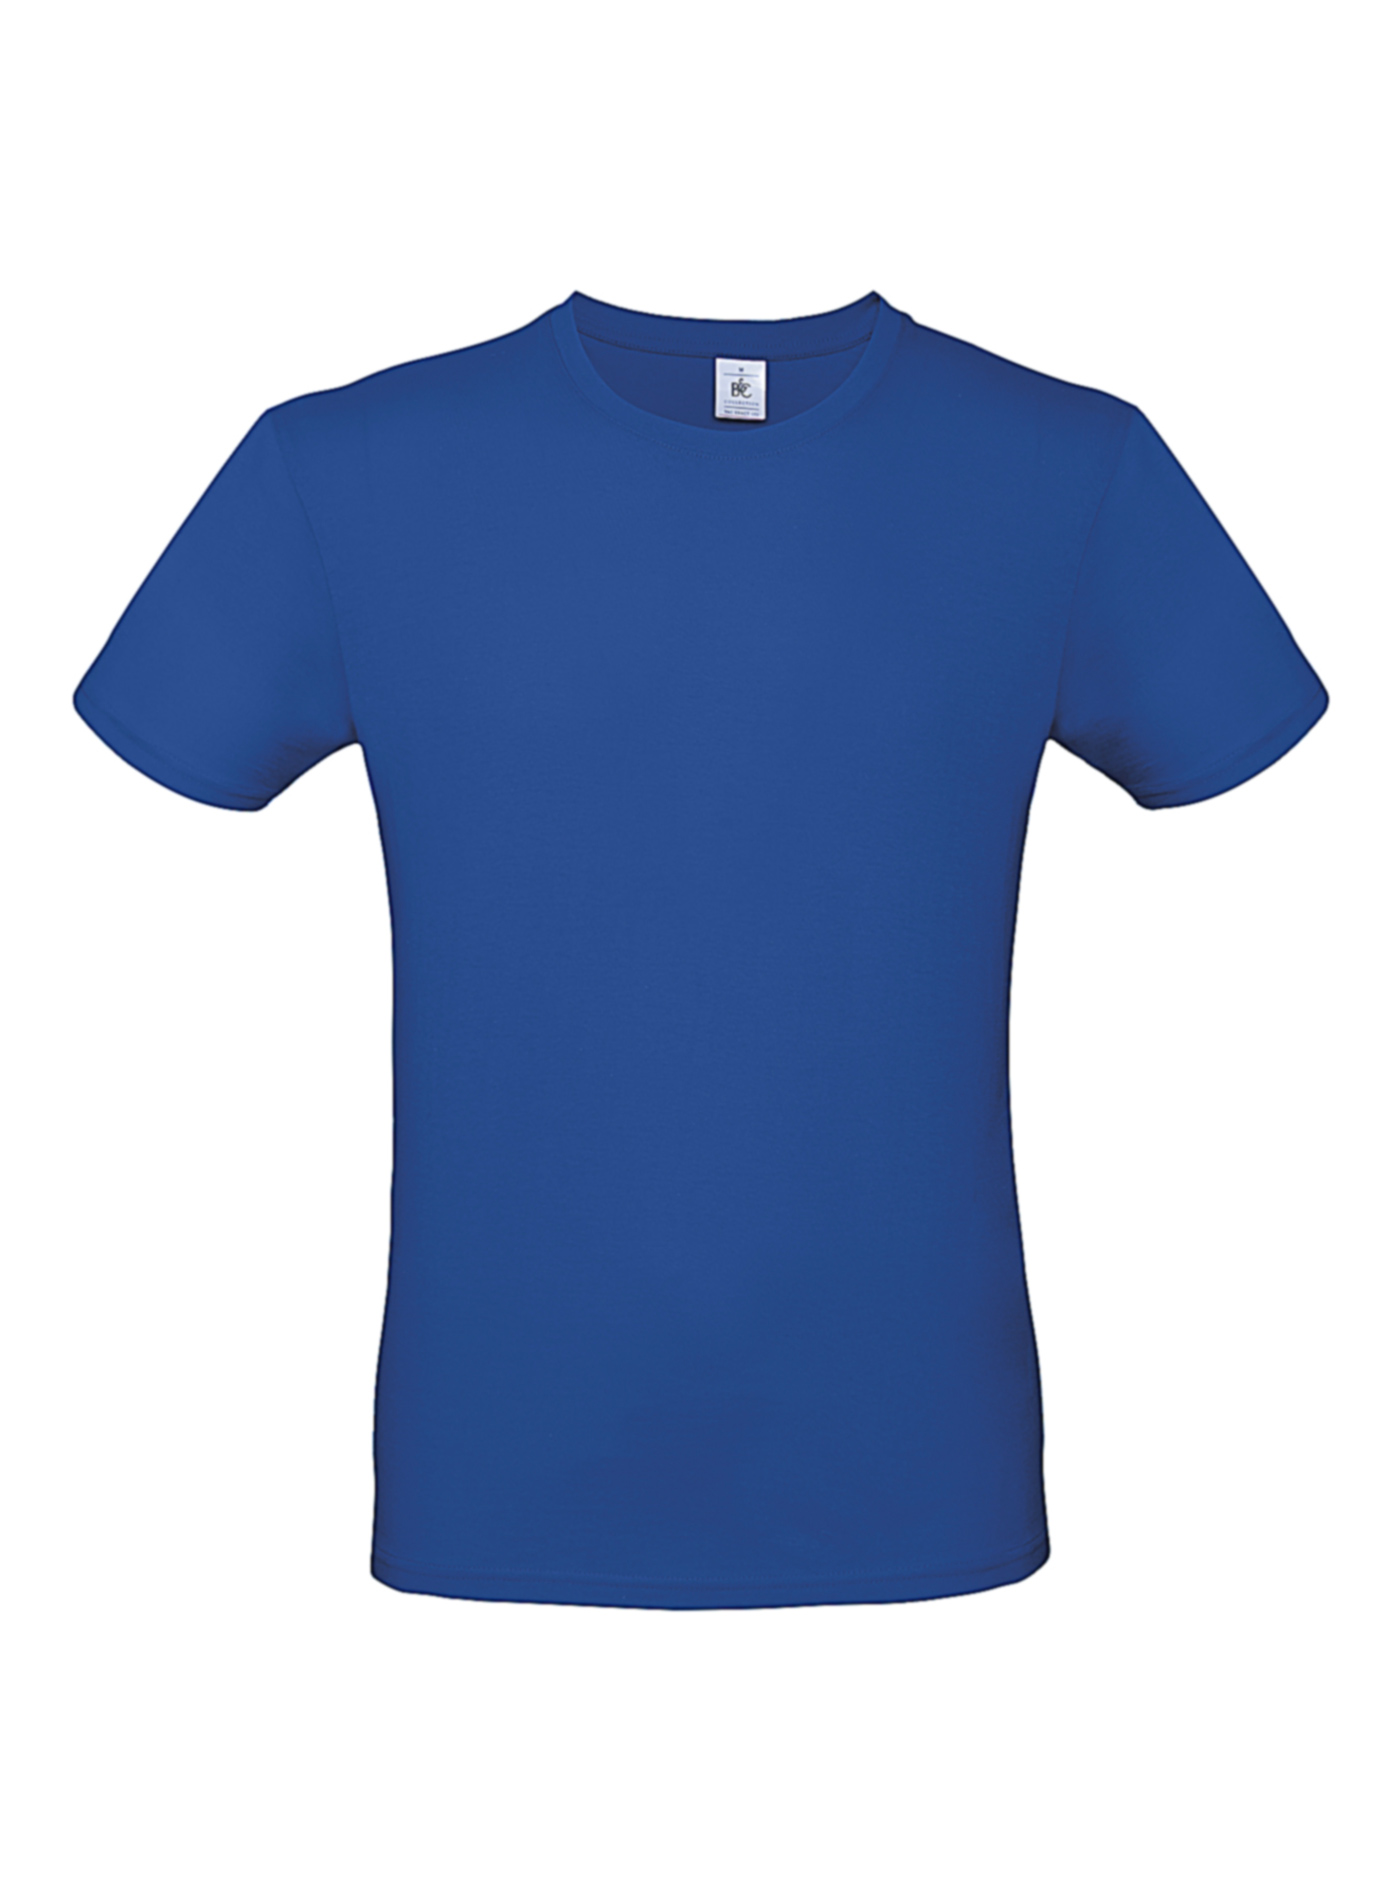 Pánské tričko B&C - královská modrá XL